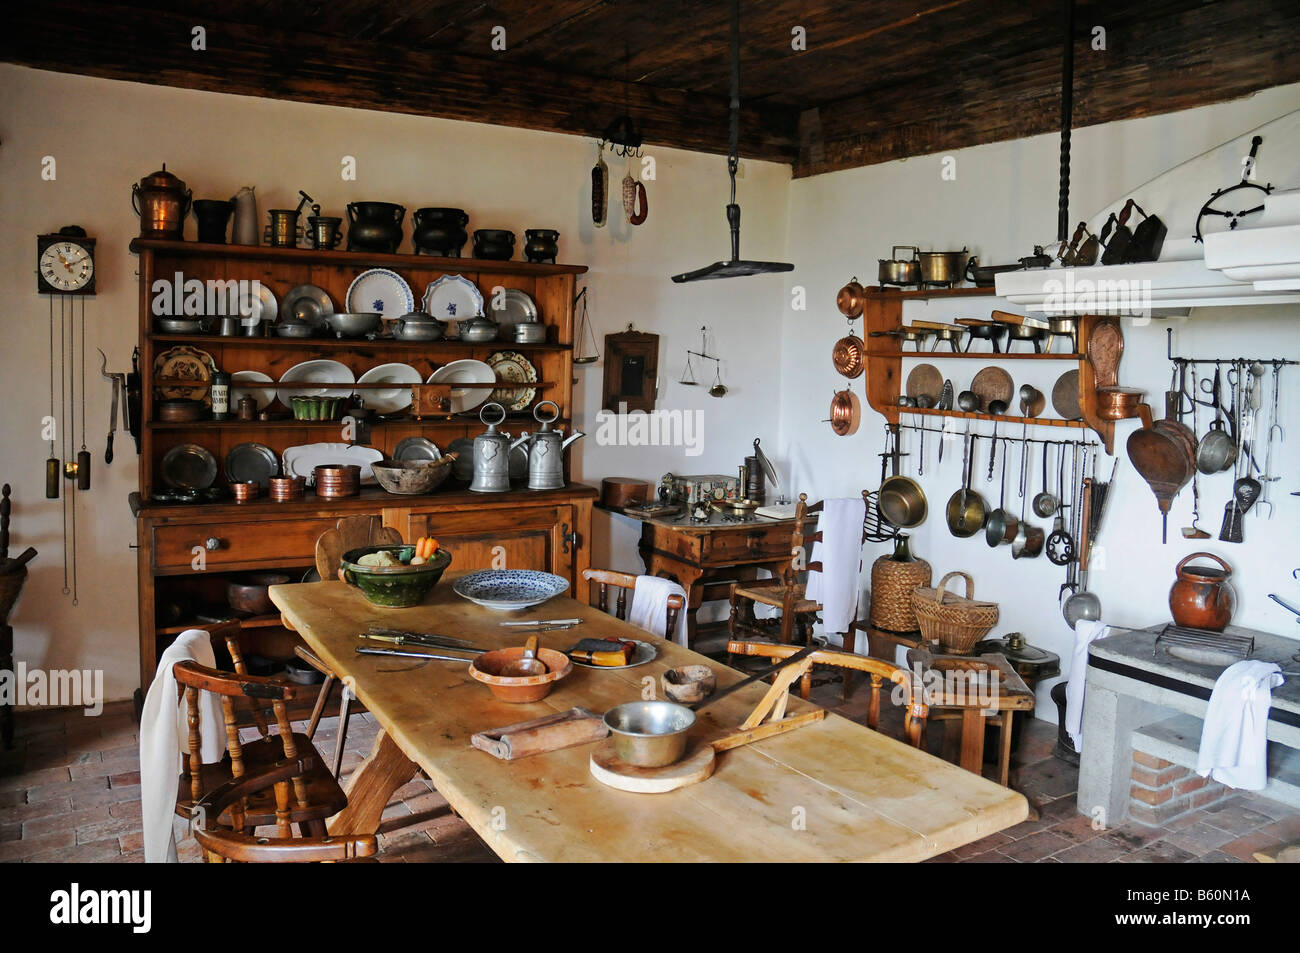 Historische Küche, Inneneinrichtung, Schloss Lenzburg, historisches Museum,  Aargau, Schweiz, Europa Stockfotografie - Alamy